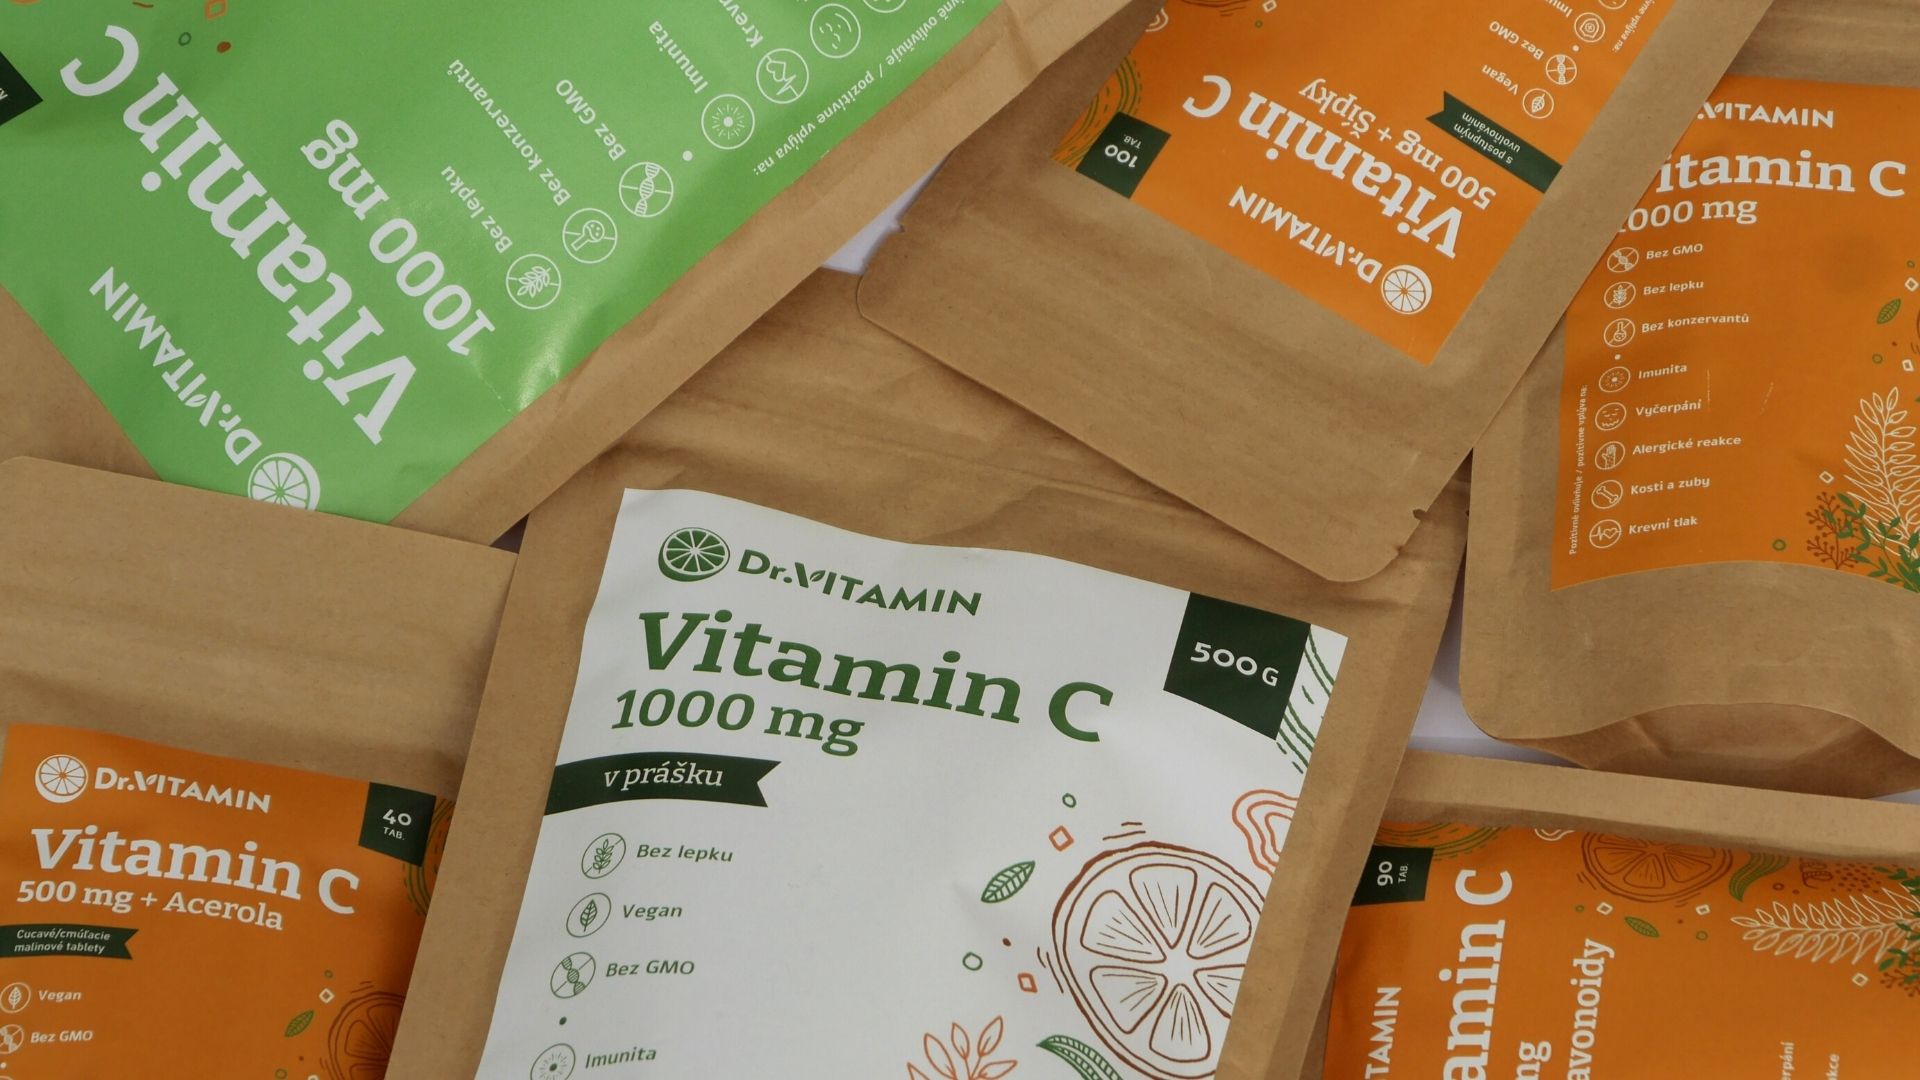 vitamin C-drvitamin